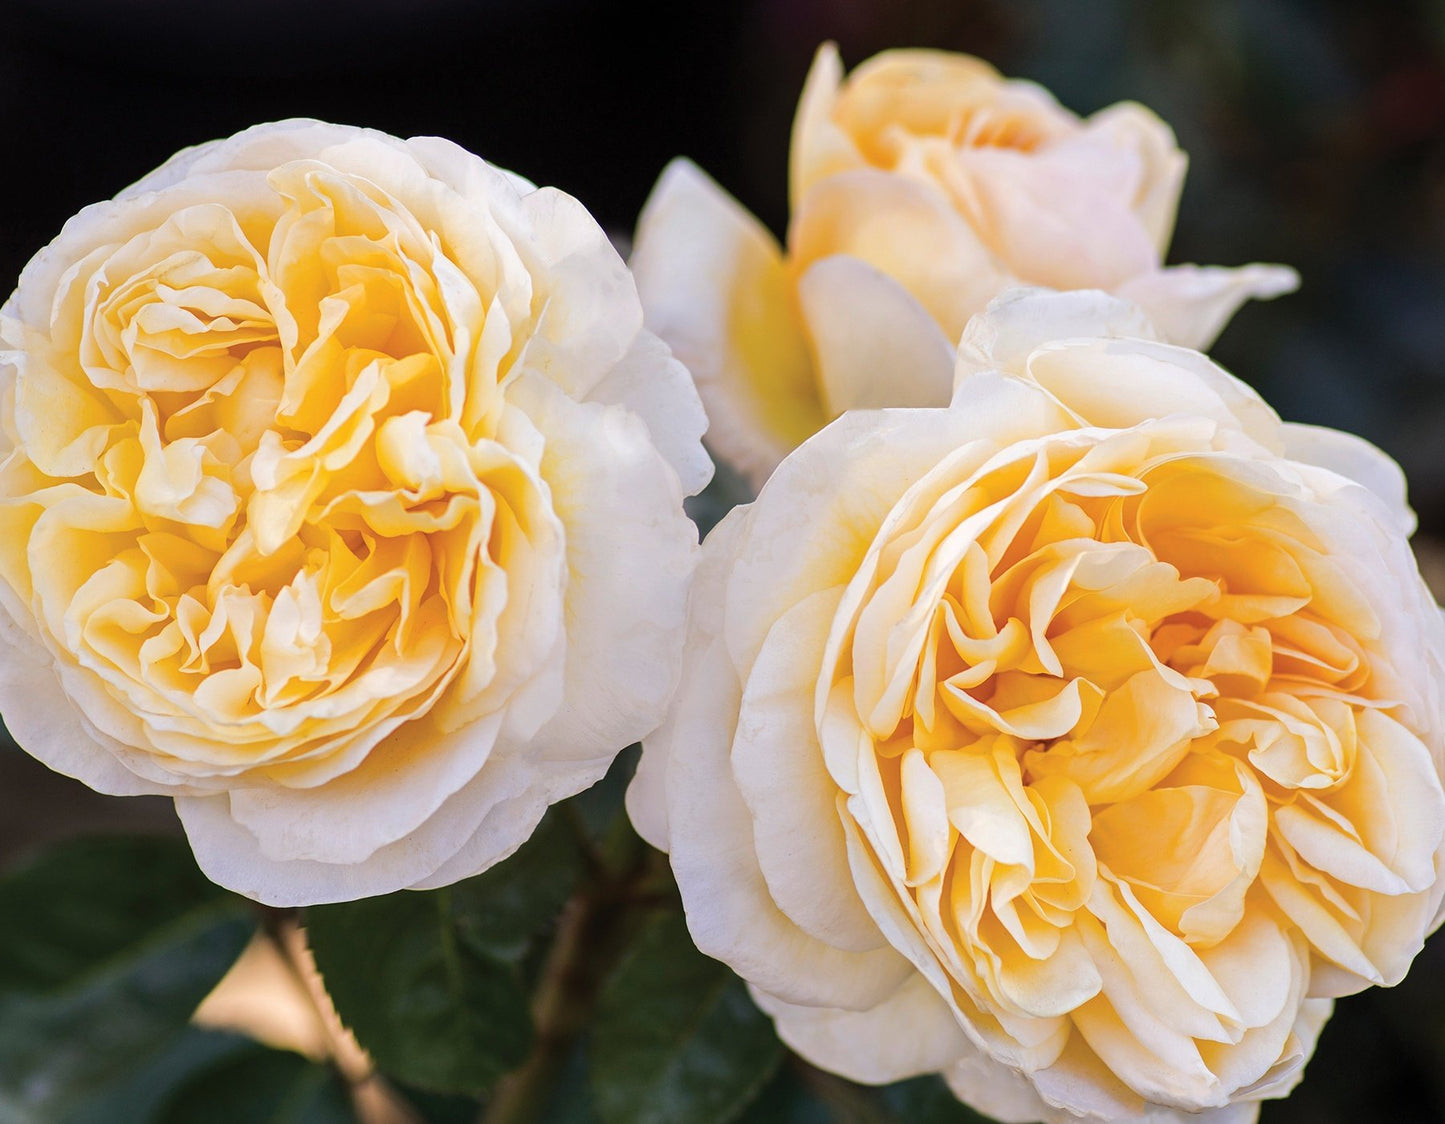 'MOONLIGHT ROMANTICA' Hybrid Tea Rose (Rosa x 'moonlight romanitica')